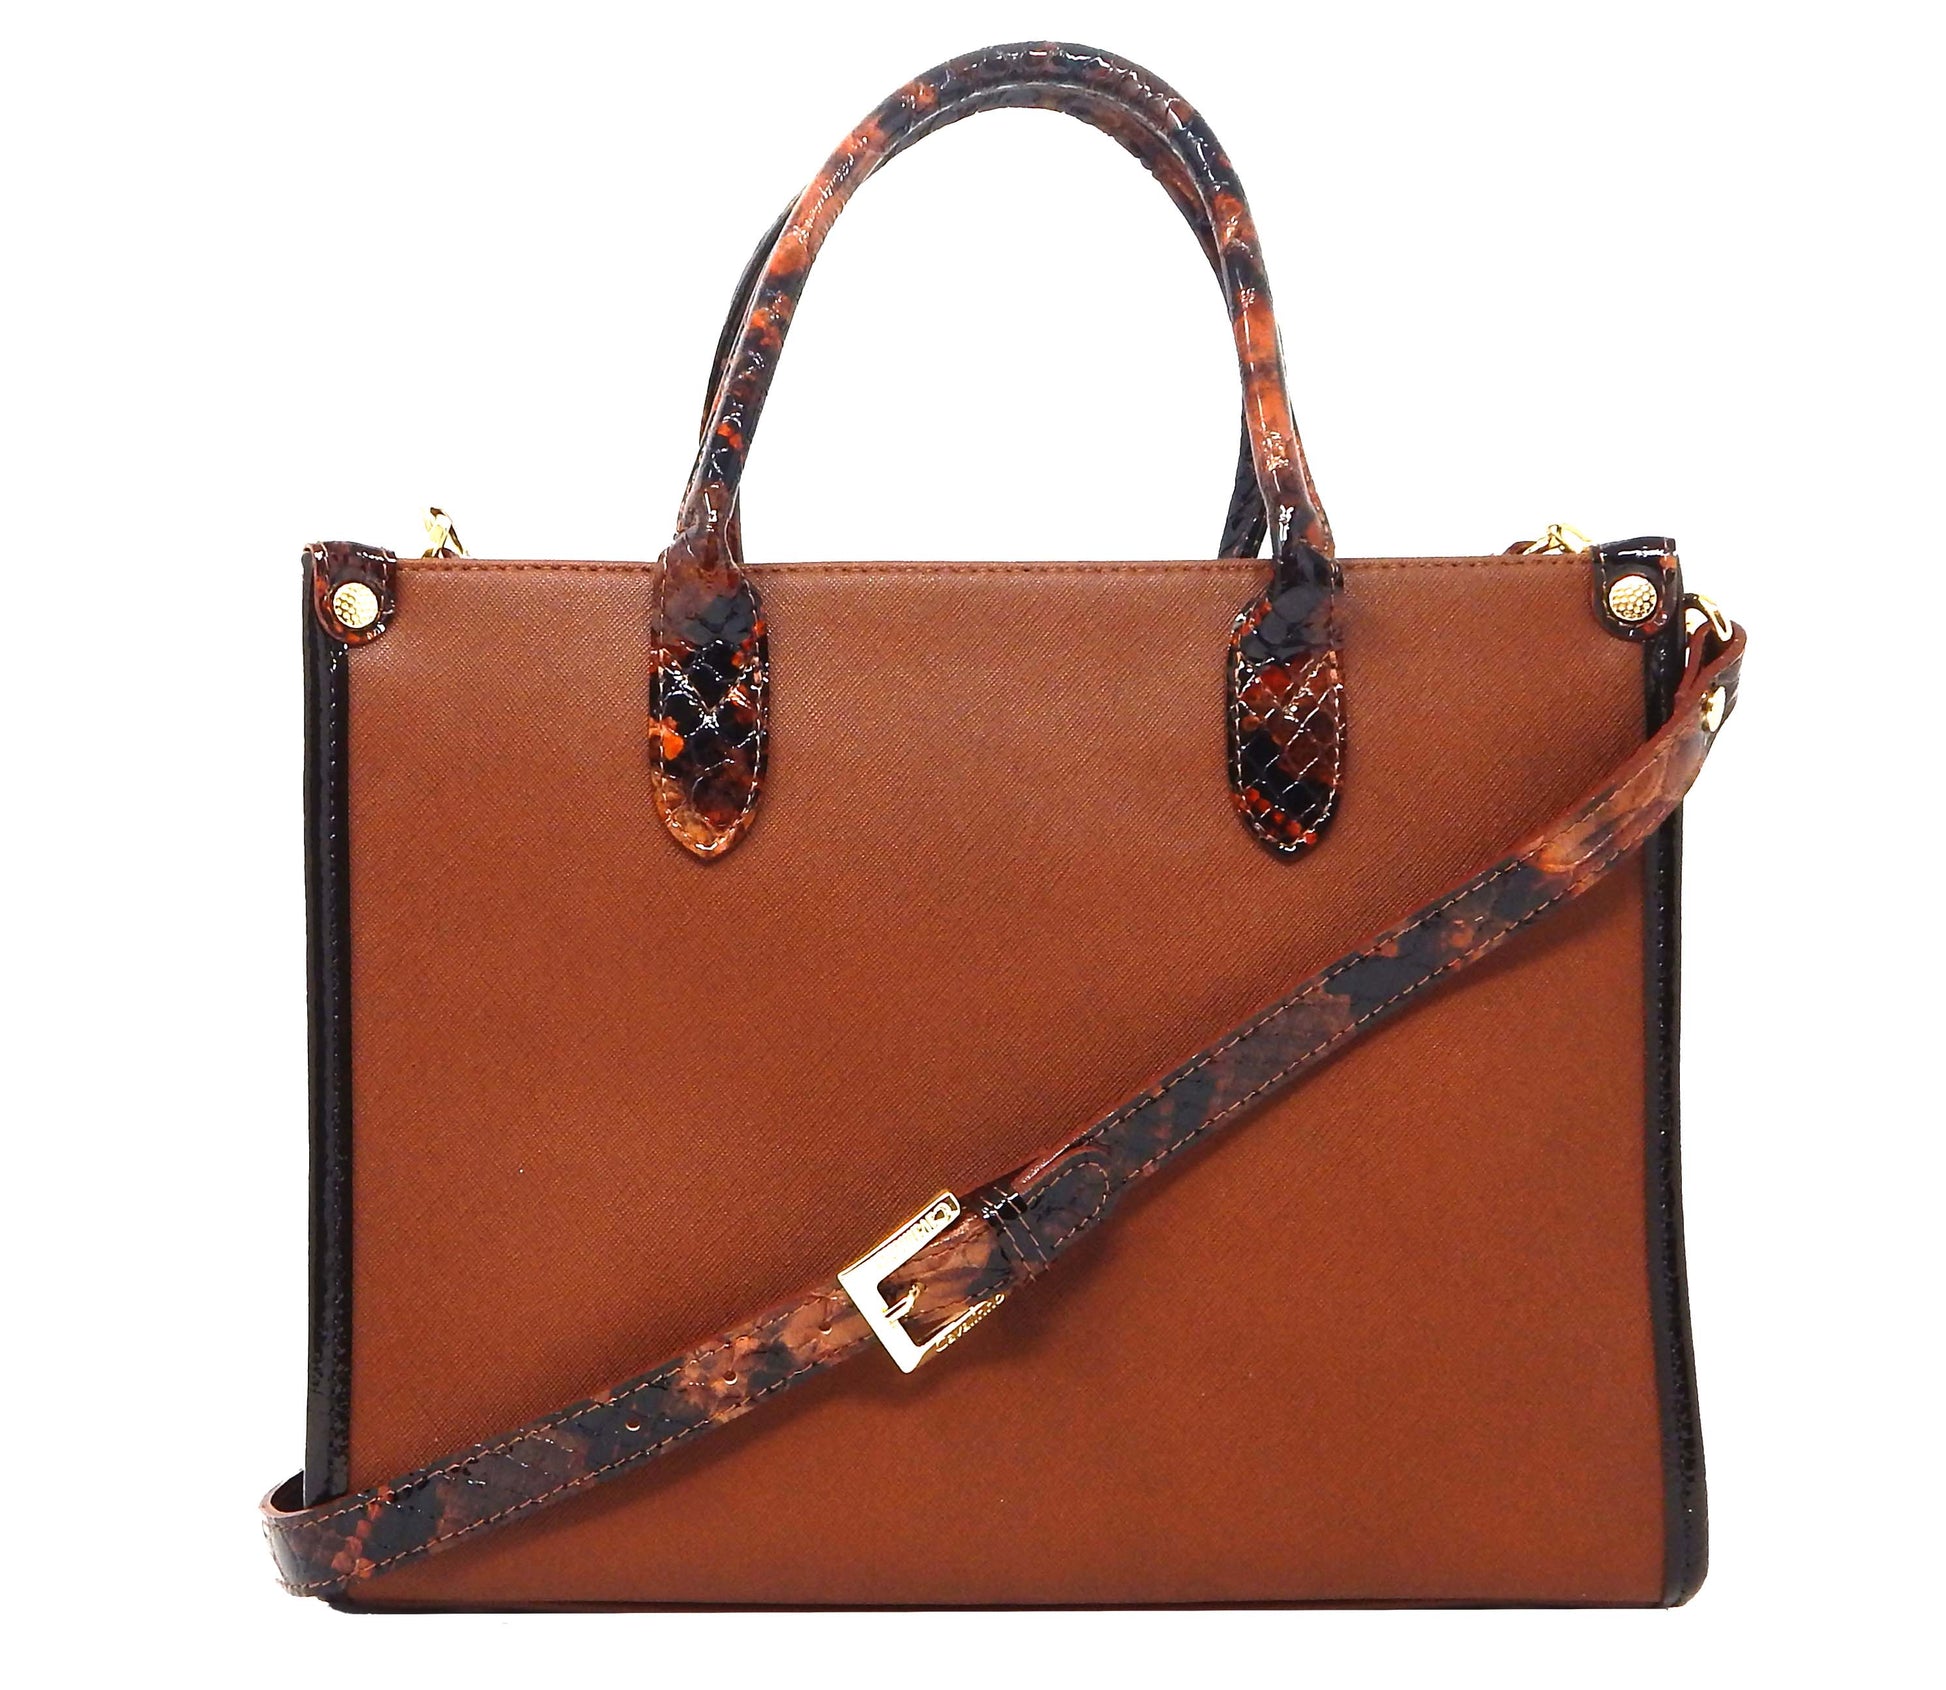 #color_ SaddleBrown | Cavalinho Honor Handbag - SaddleBrown - 18190423.13.99_3